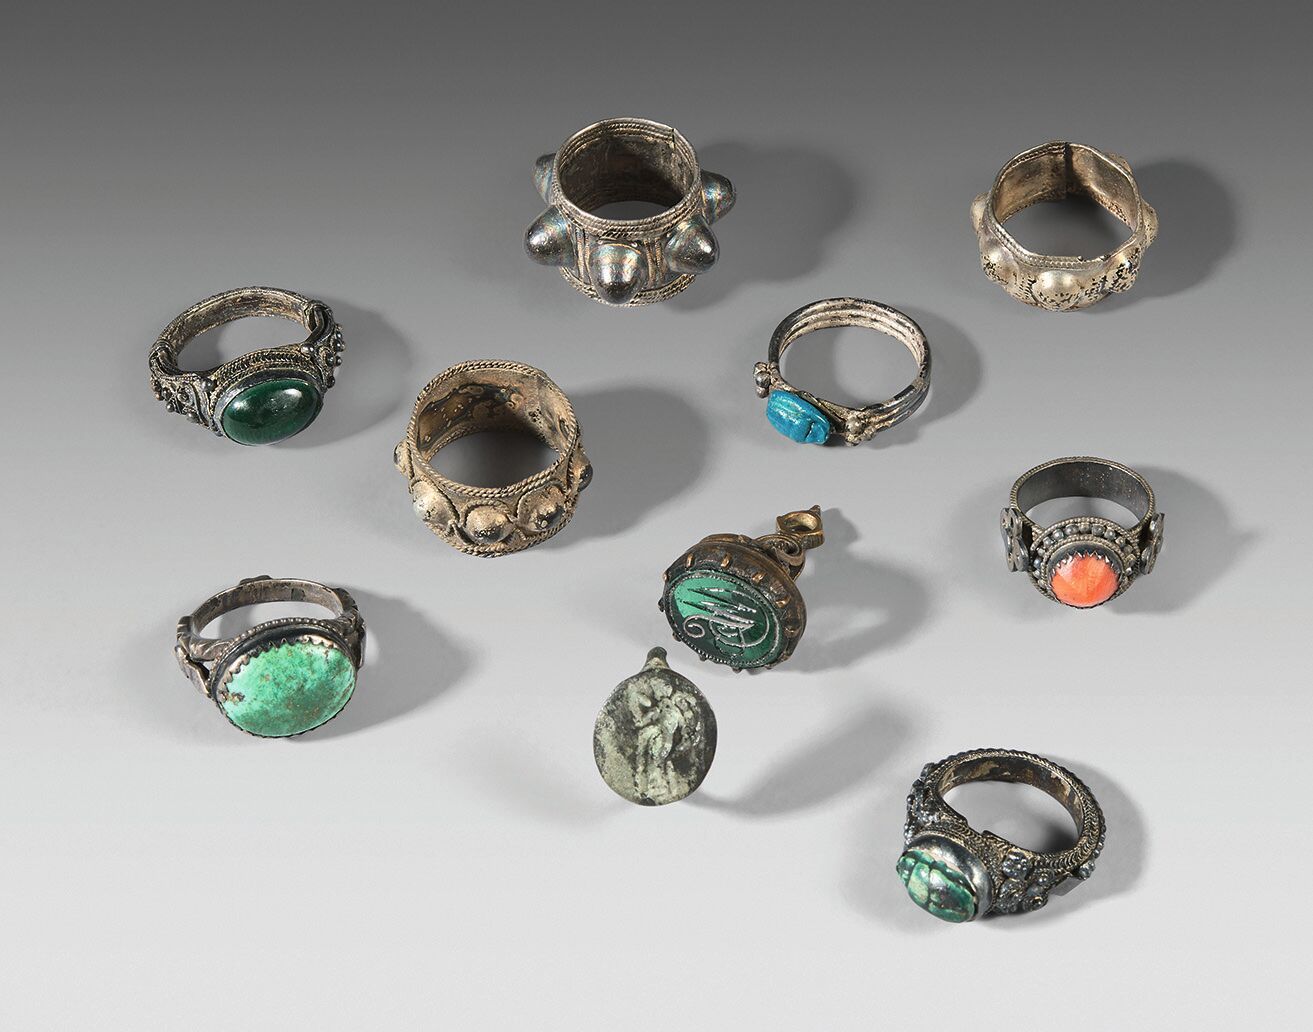 Null 九个金属戒指，带有各种凸圆形宝石和一个玻璃印章，包括一个公元前4世纪的希腊戒指。
其余的是19世纪的。